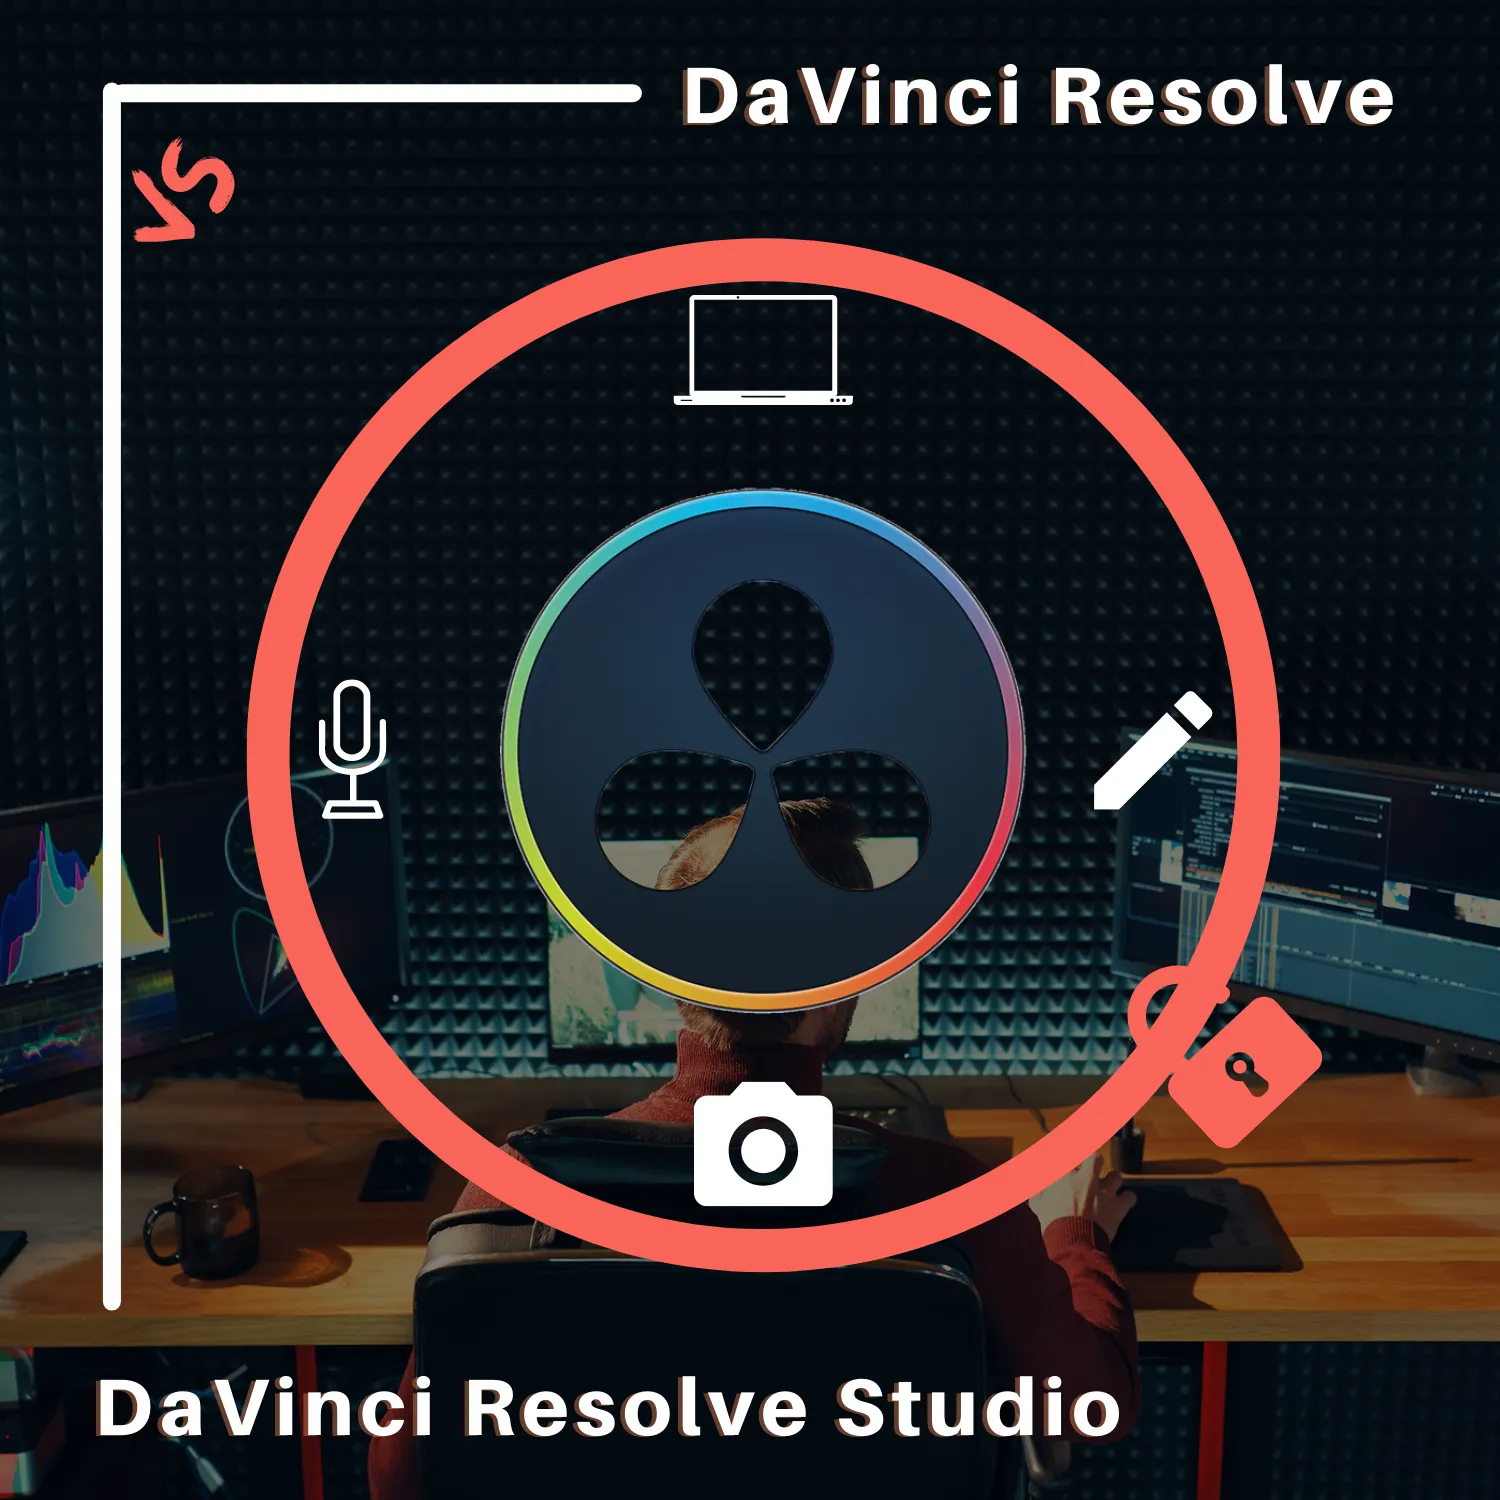 DaVinci Resolve vs. DaVinci Resolve Studio